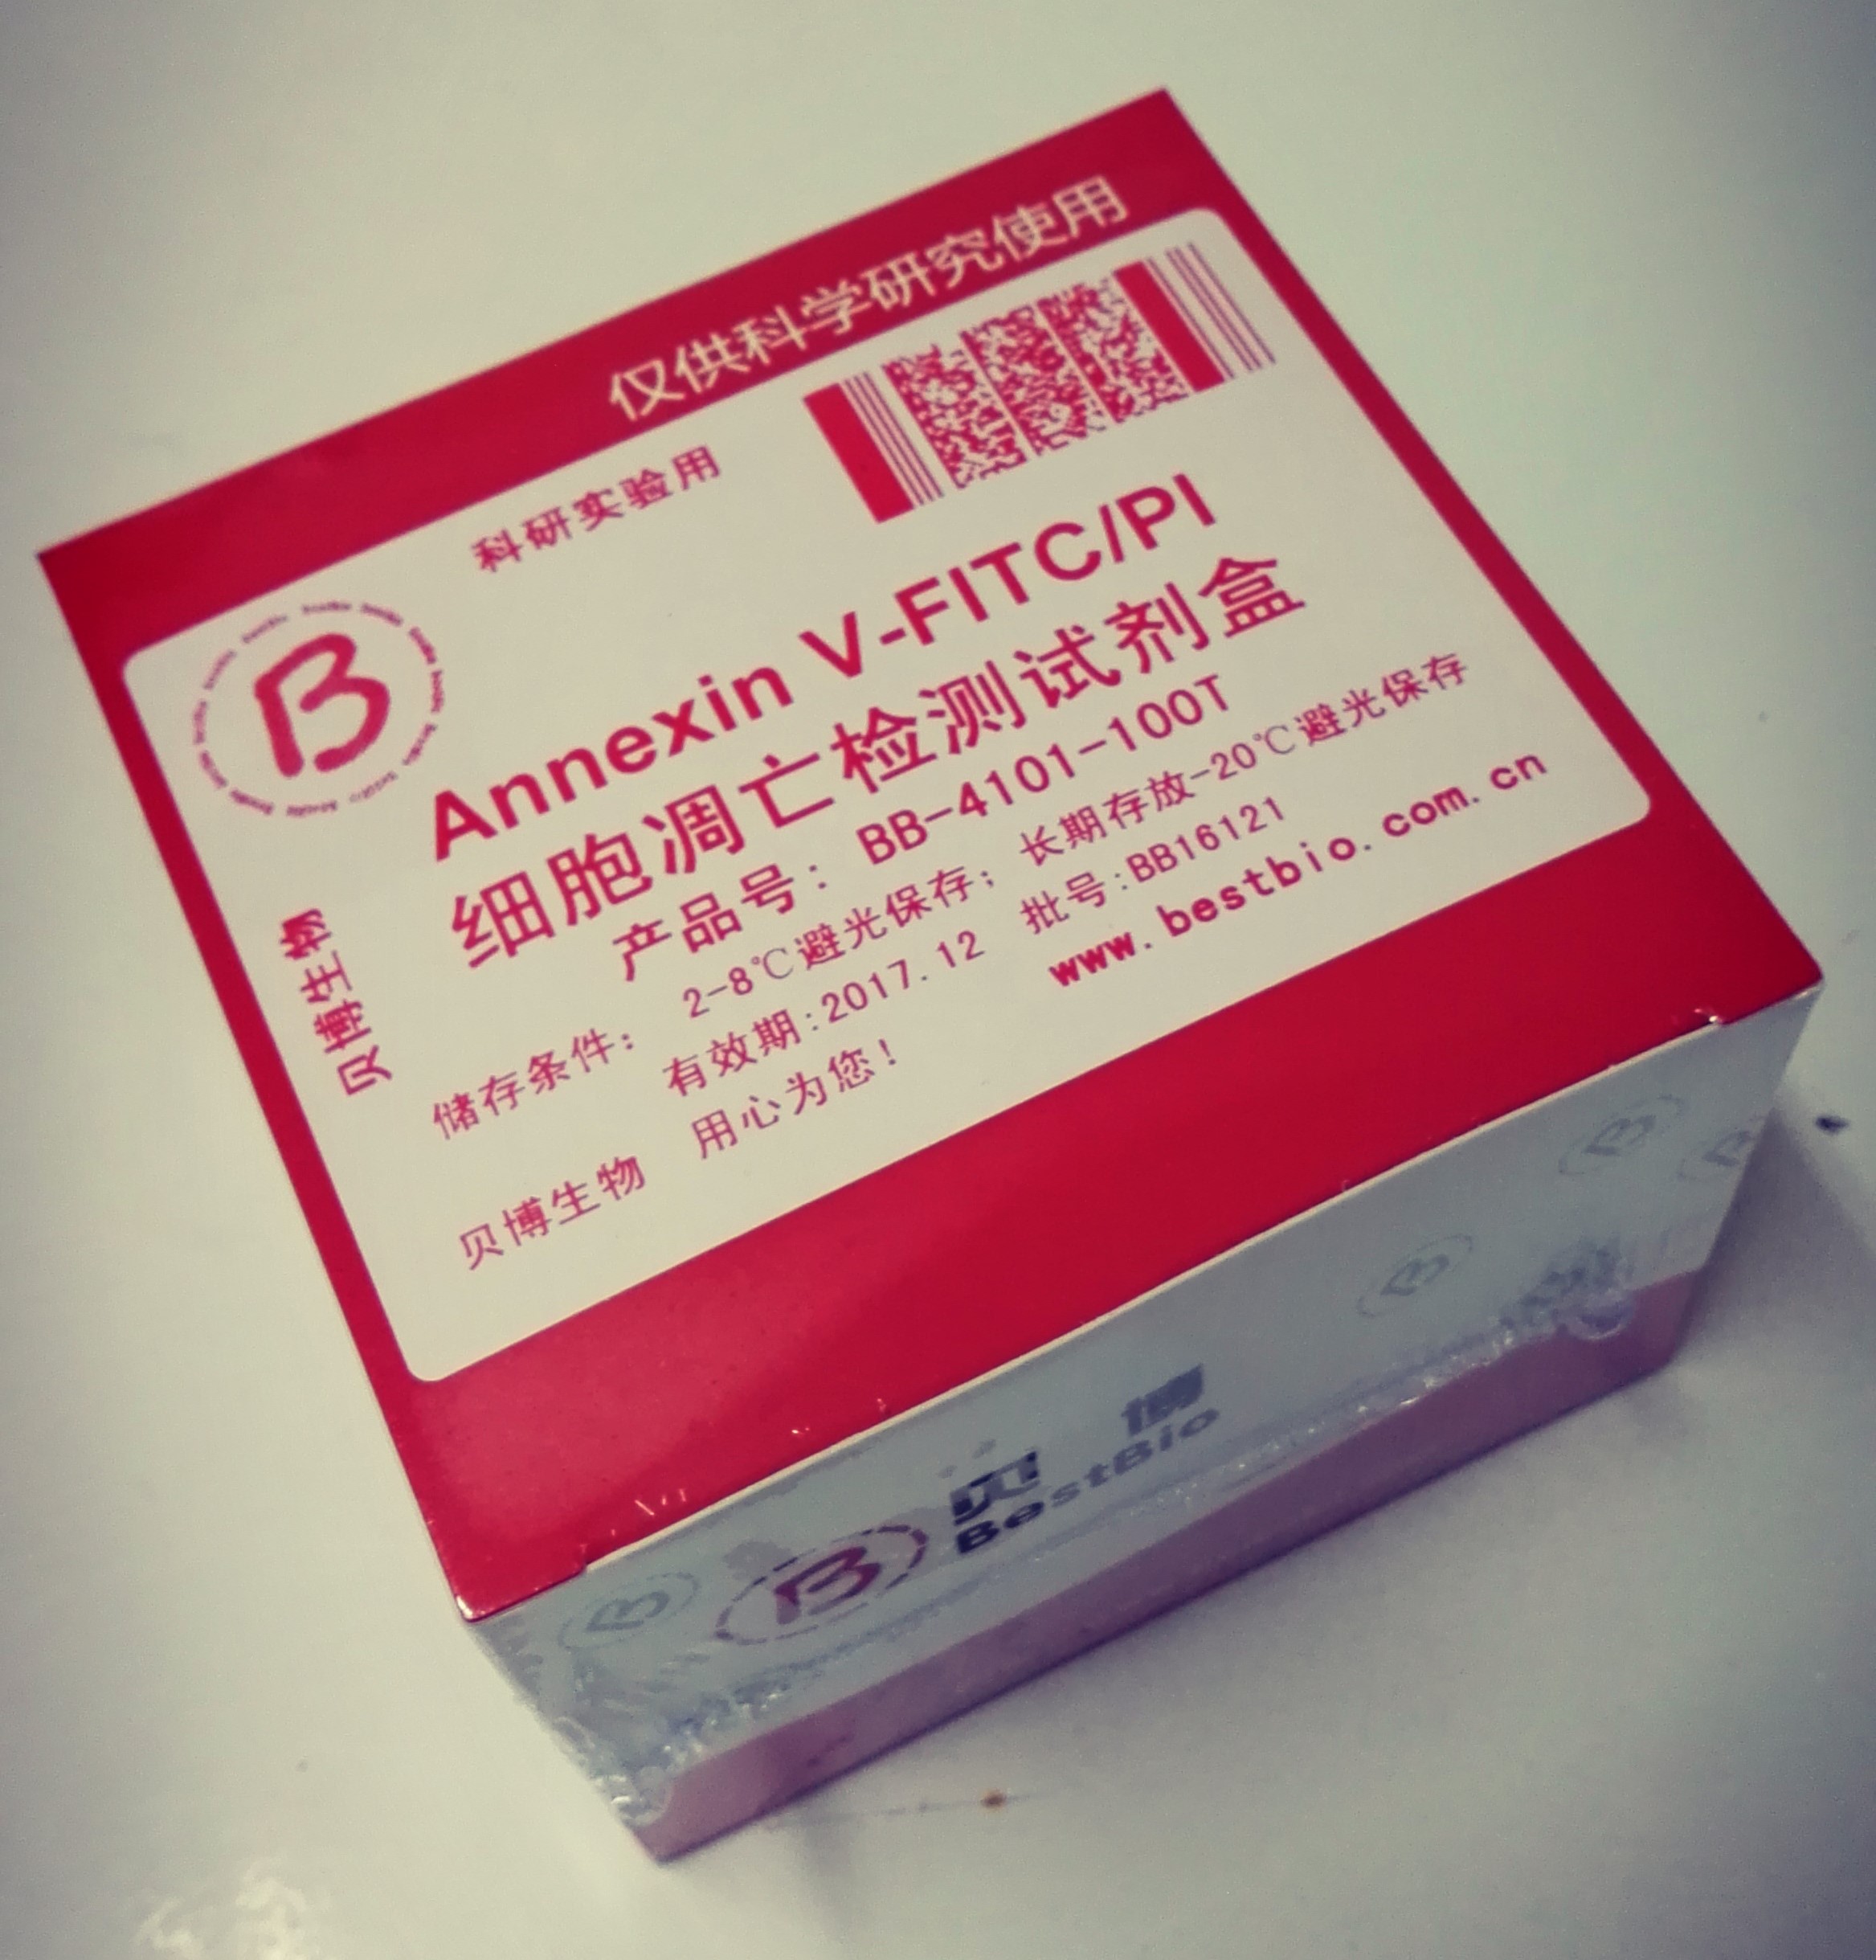 Annexin V-FITC/PI 双染细胞凋亡检测试剂盒（BestBio贝博）